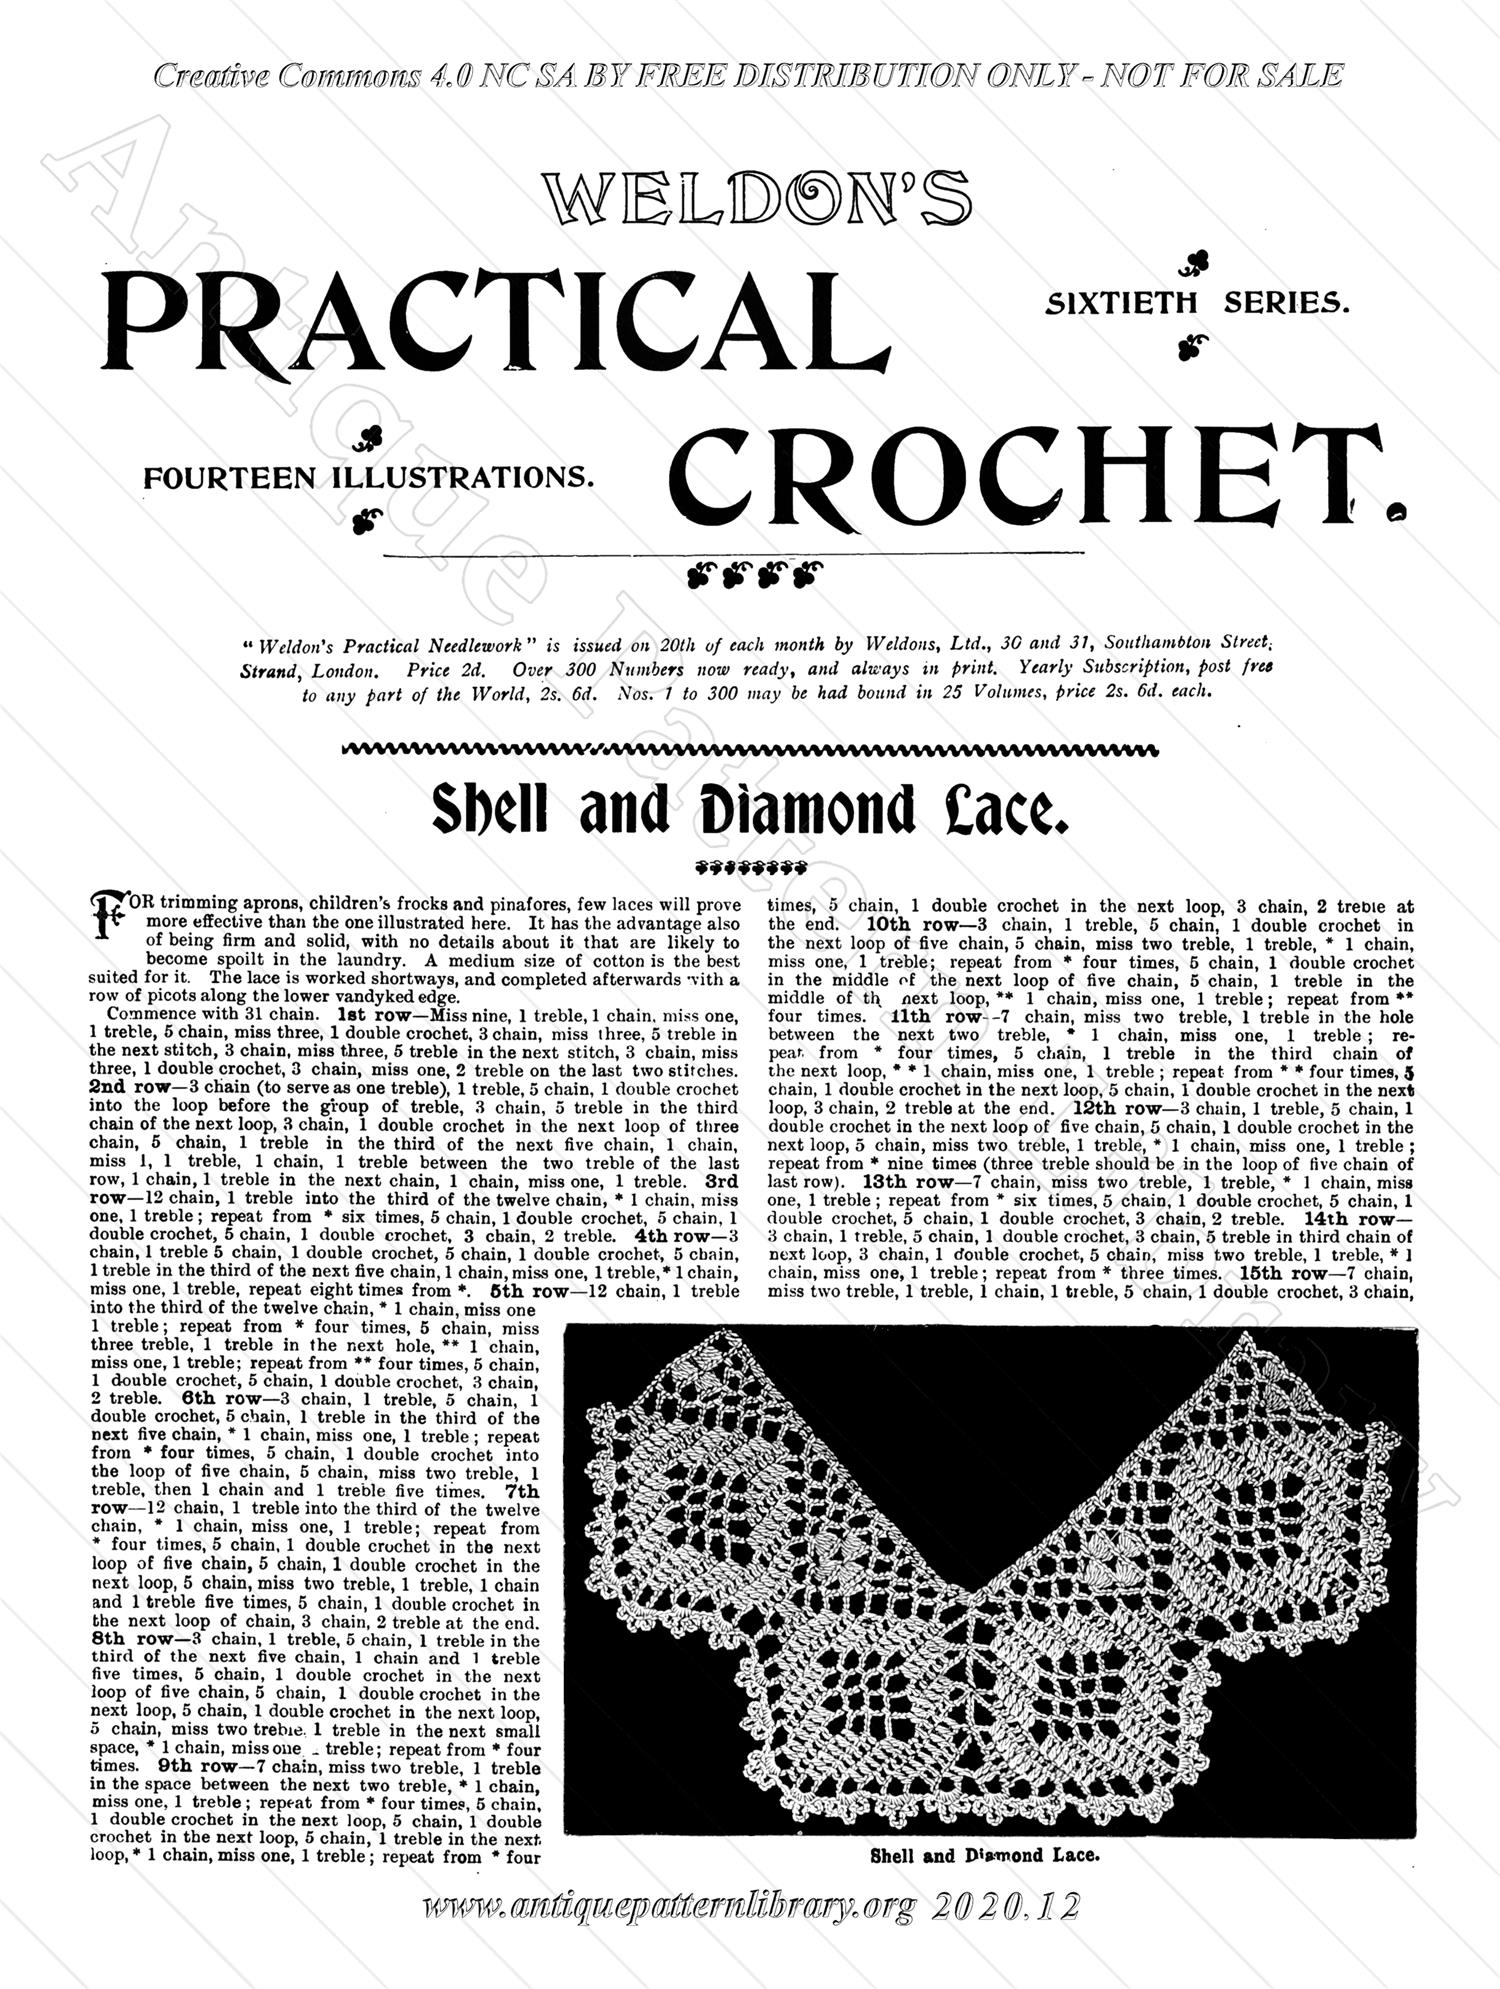 K-WK013 Weldon's Practical Crochet, Sixtieth Series